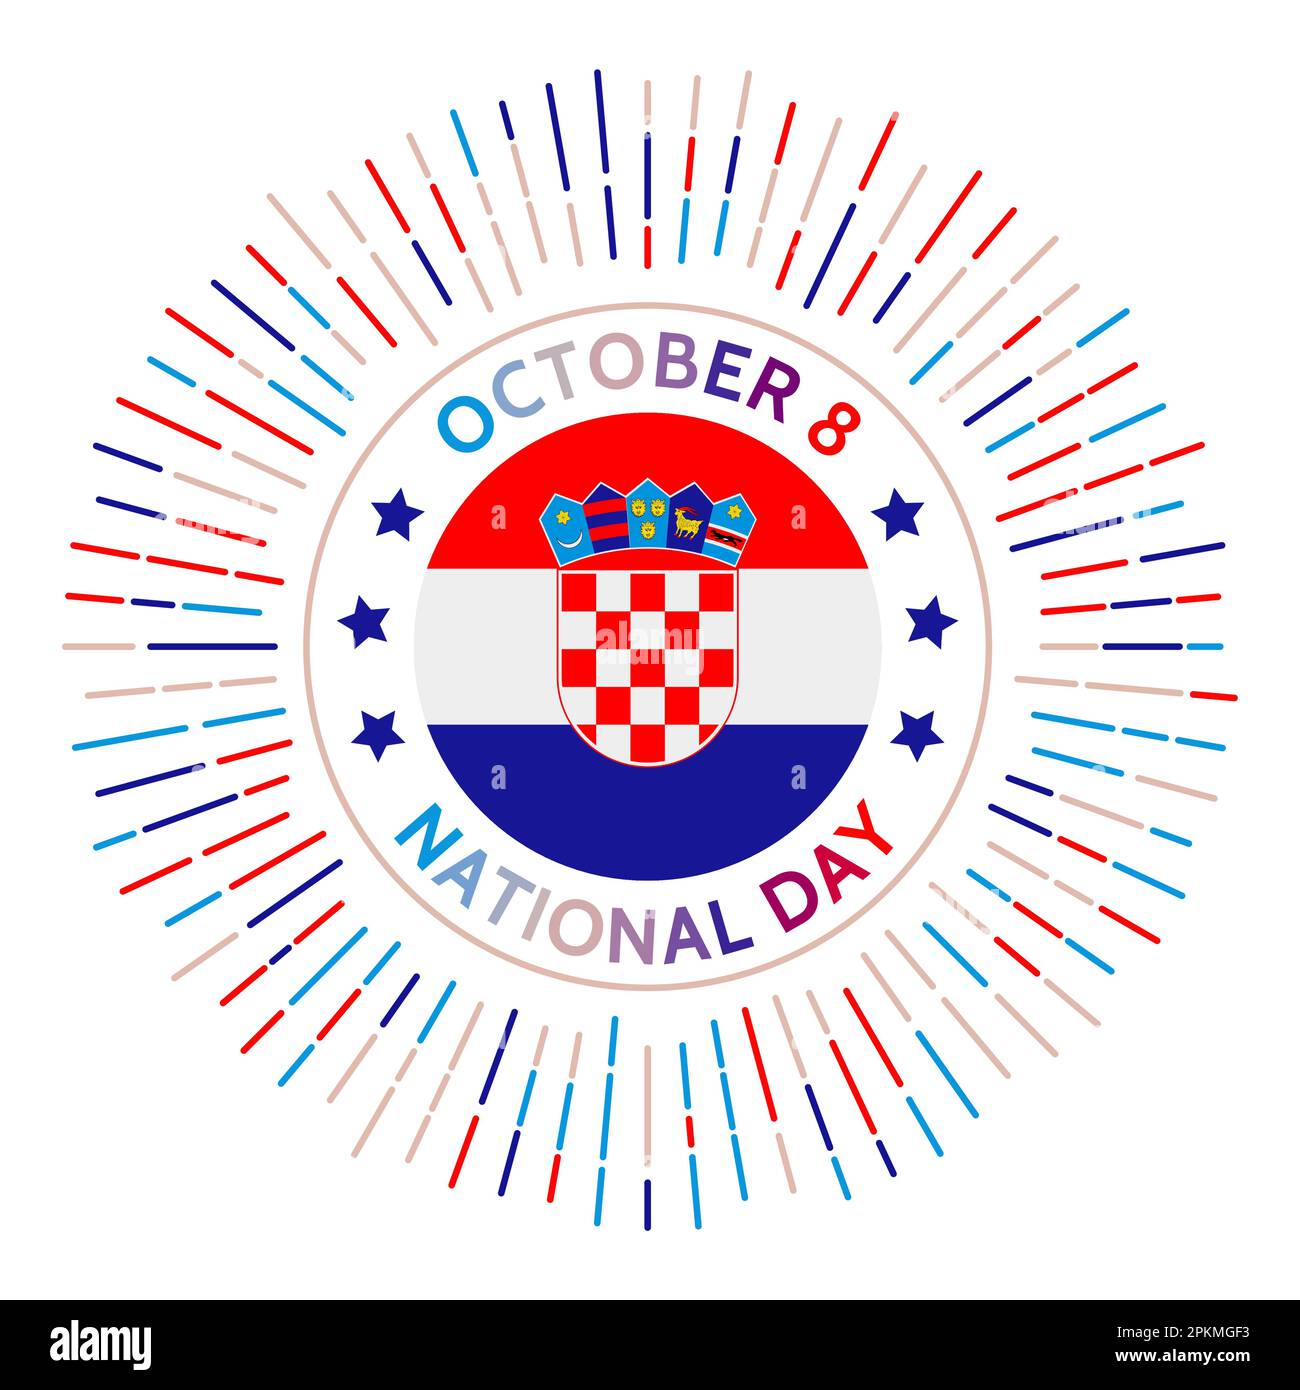 Kroatisches Nationalfeierabzeichen. Unabhängigkeit von der SFR Jugoslawien im Jahr 1991. Am 8. Oktober gefeiert. Stock Vektor